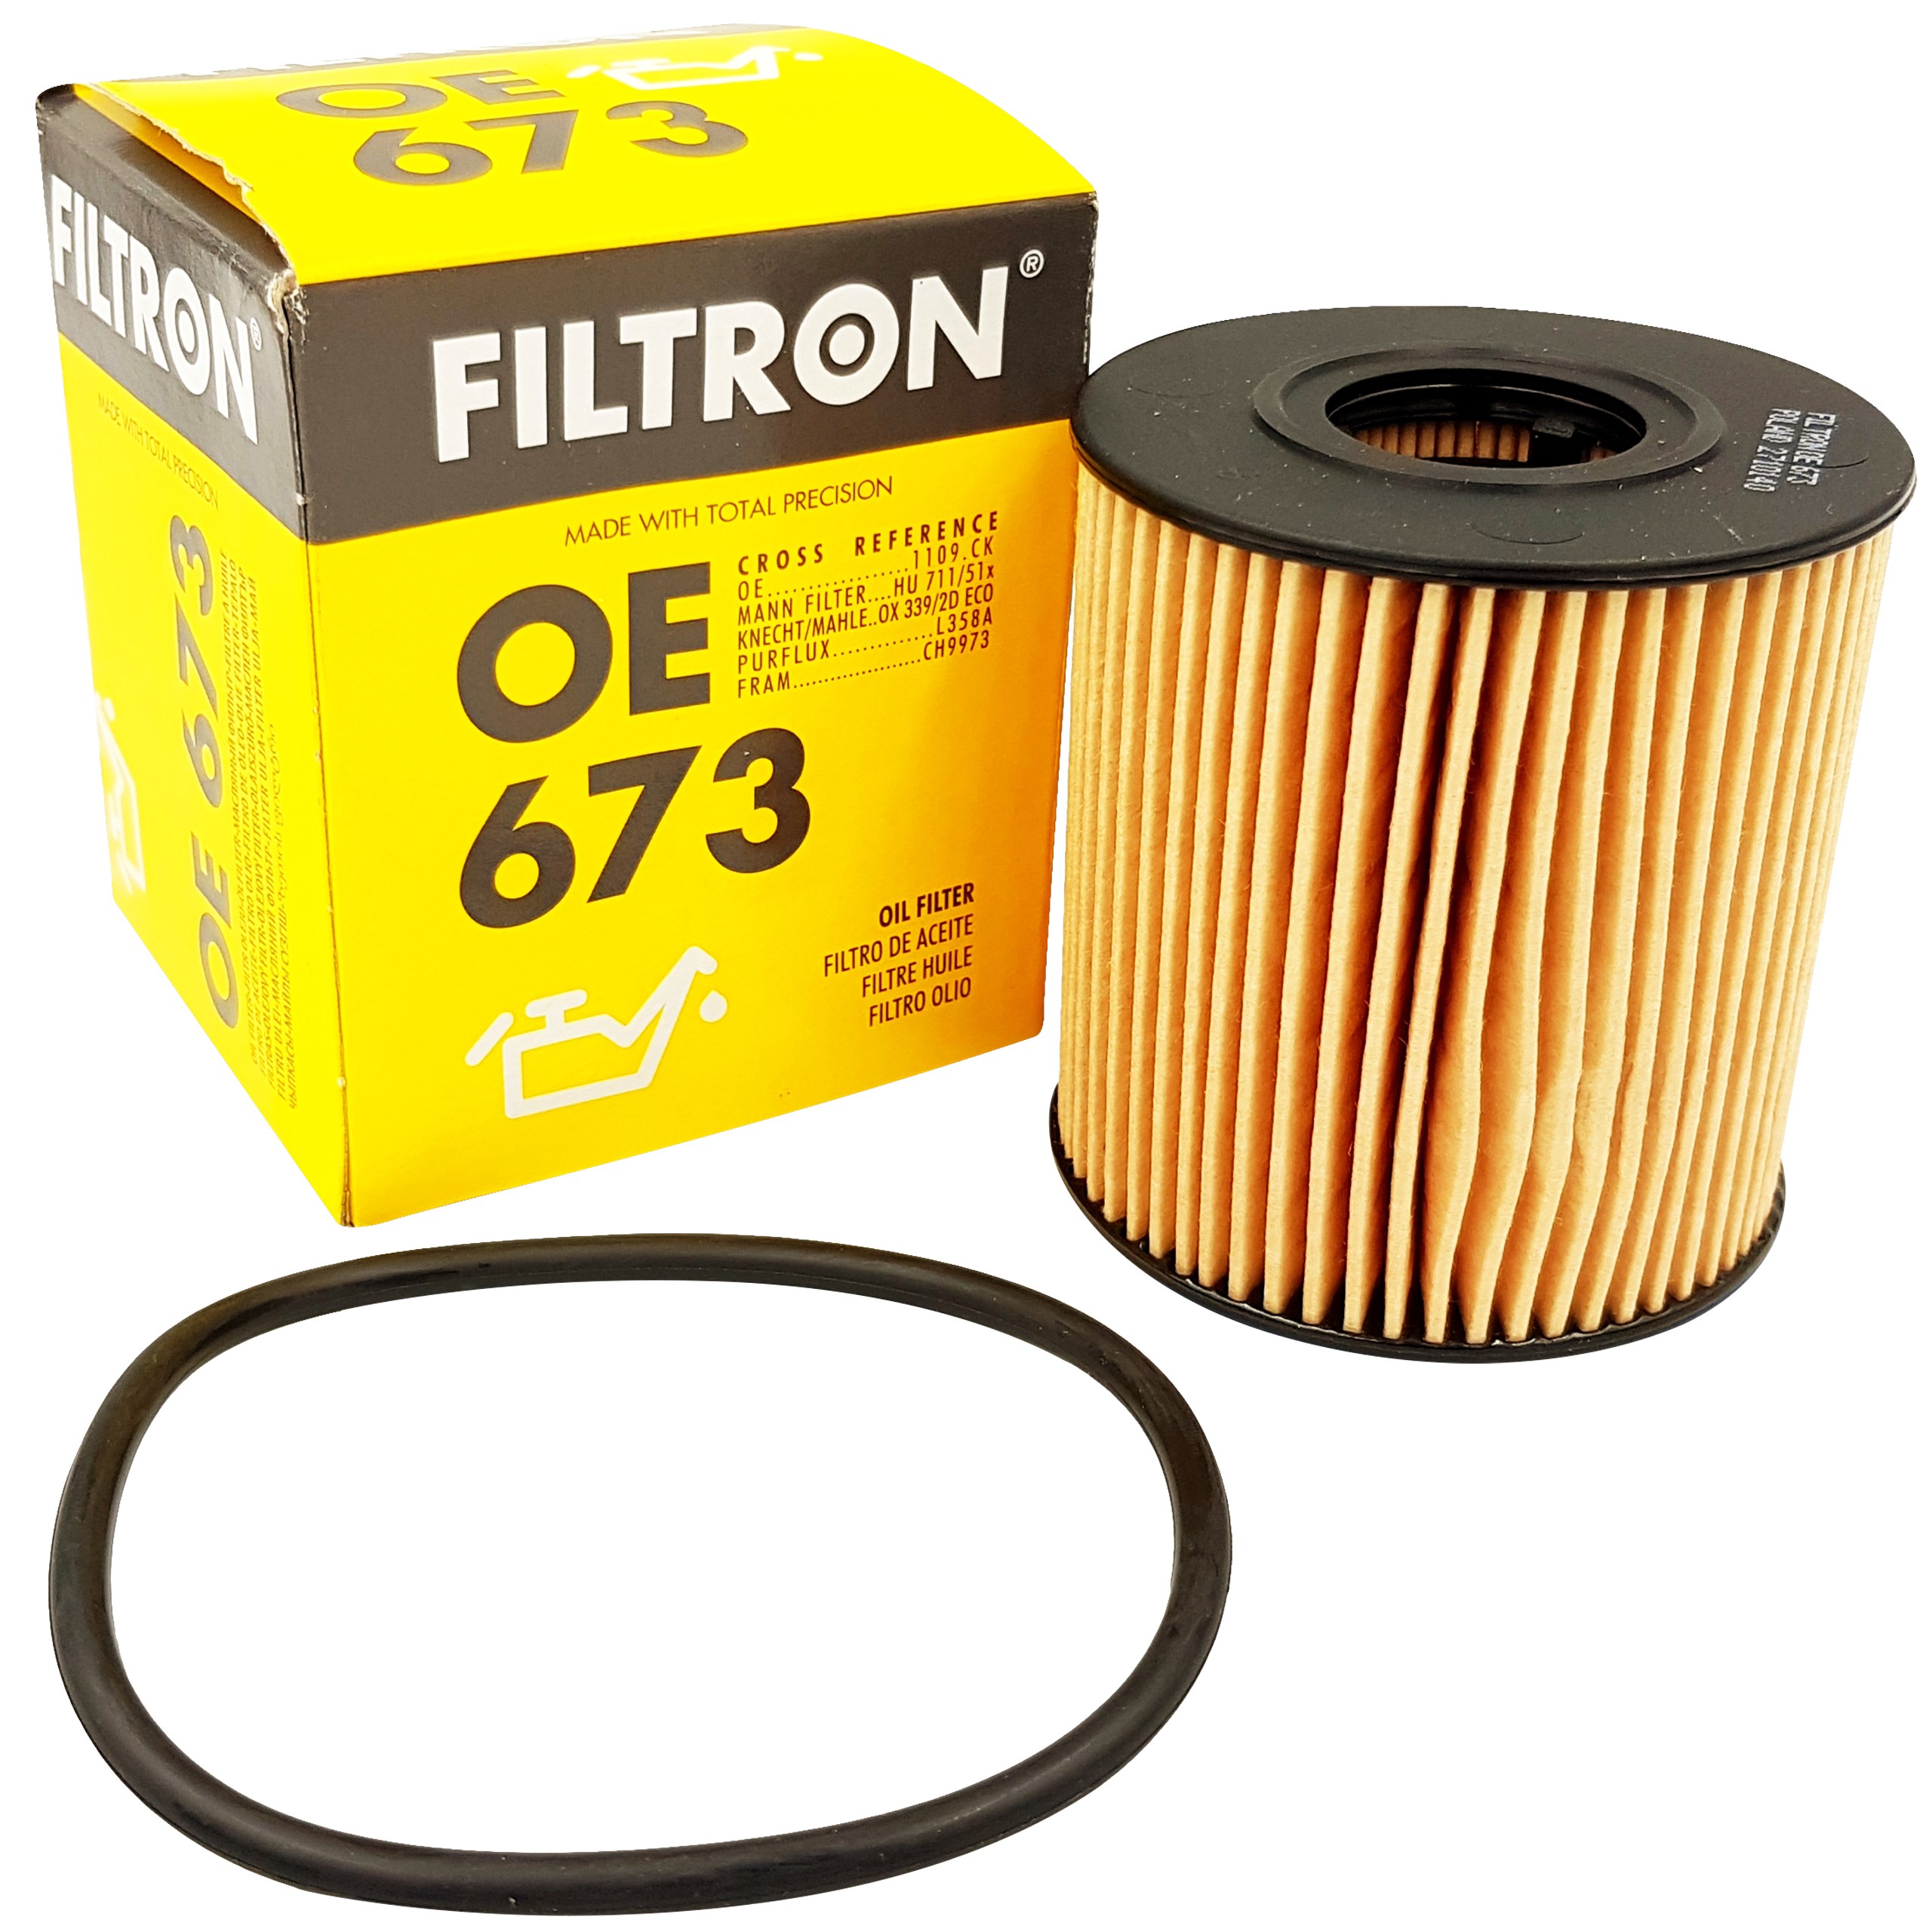 Filtr oleju Filtron OE673 Citroen Ford Peugeot 8513764969